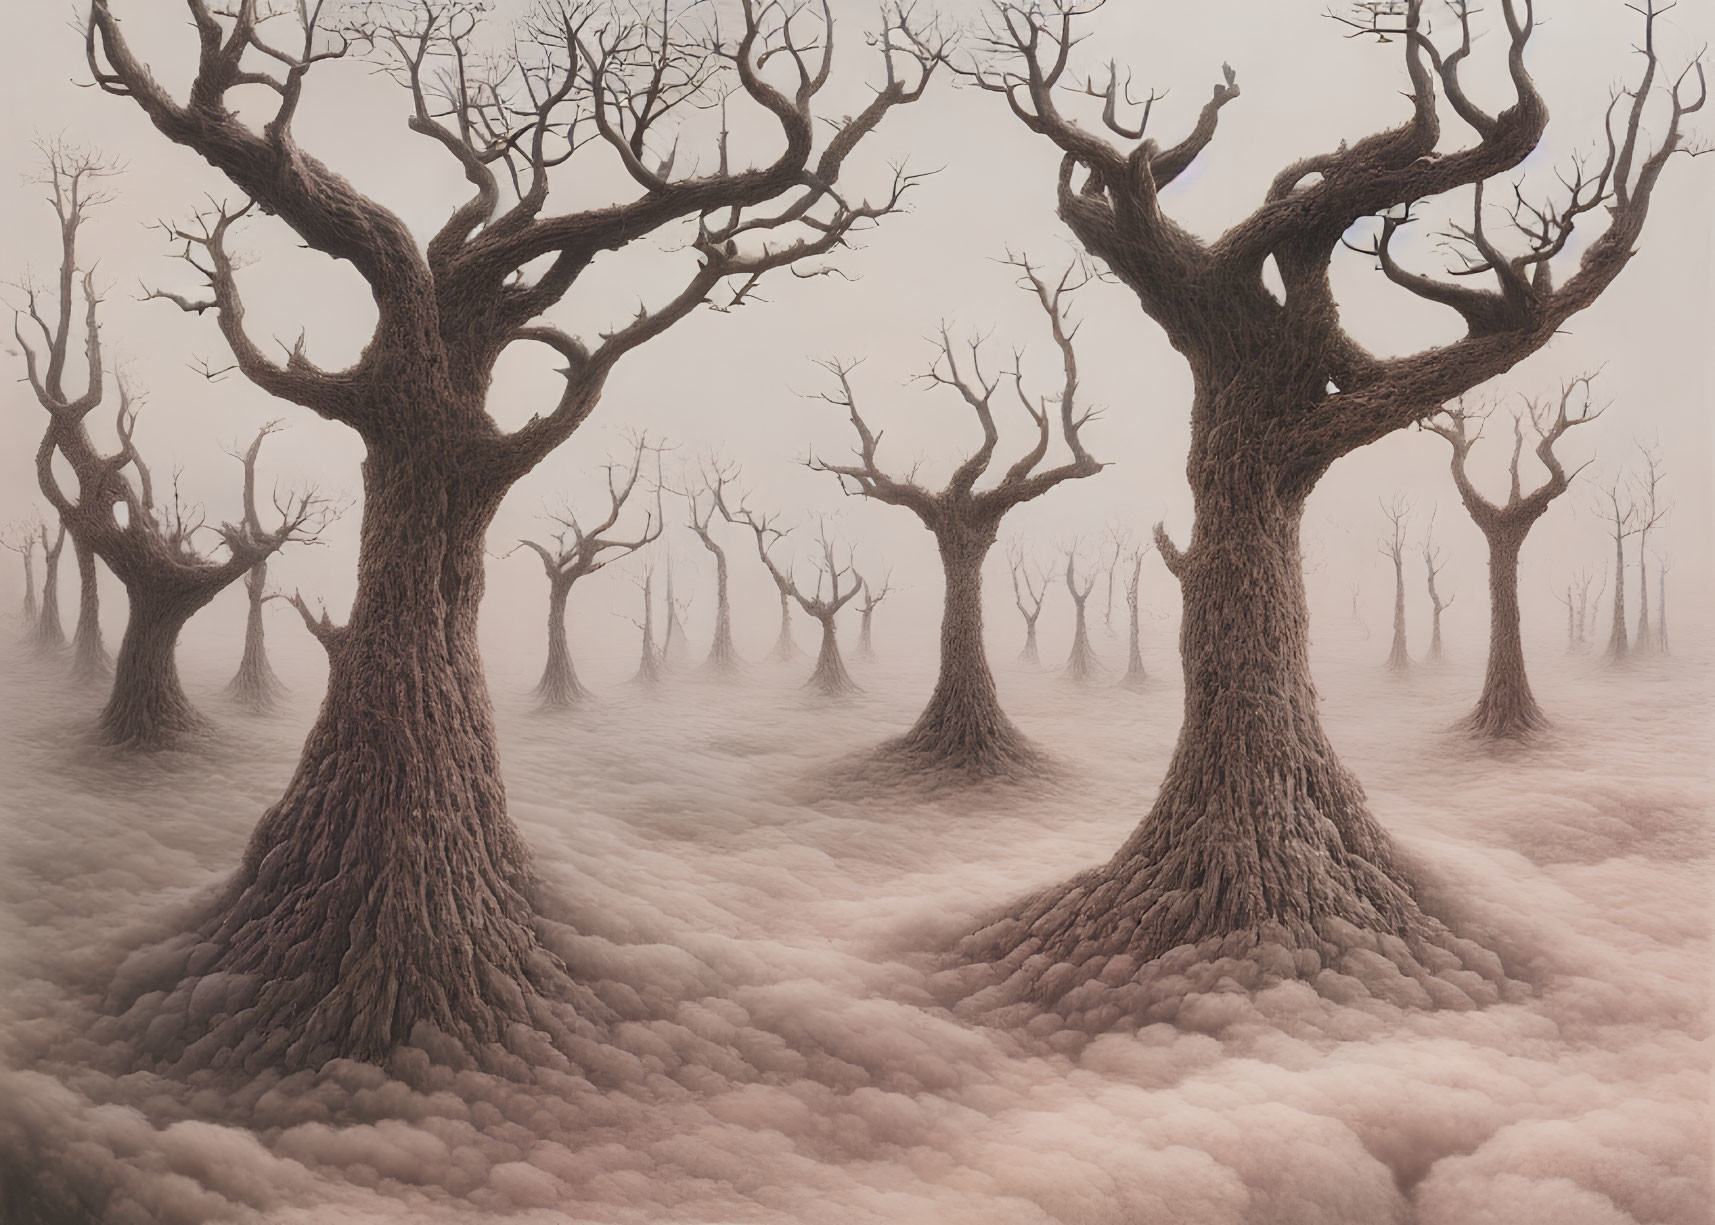 Twisted leafless trees on pinkish-white foggy ground